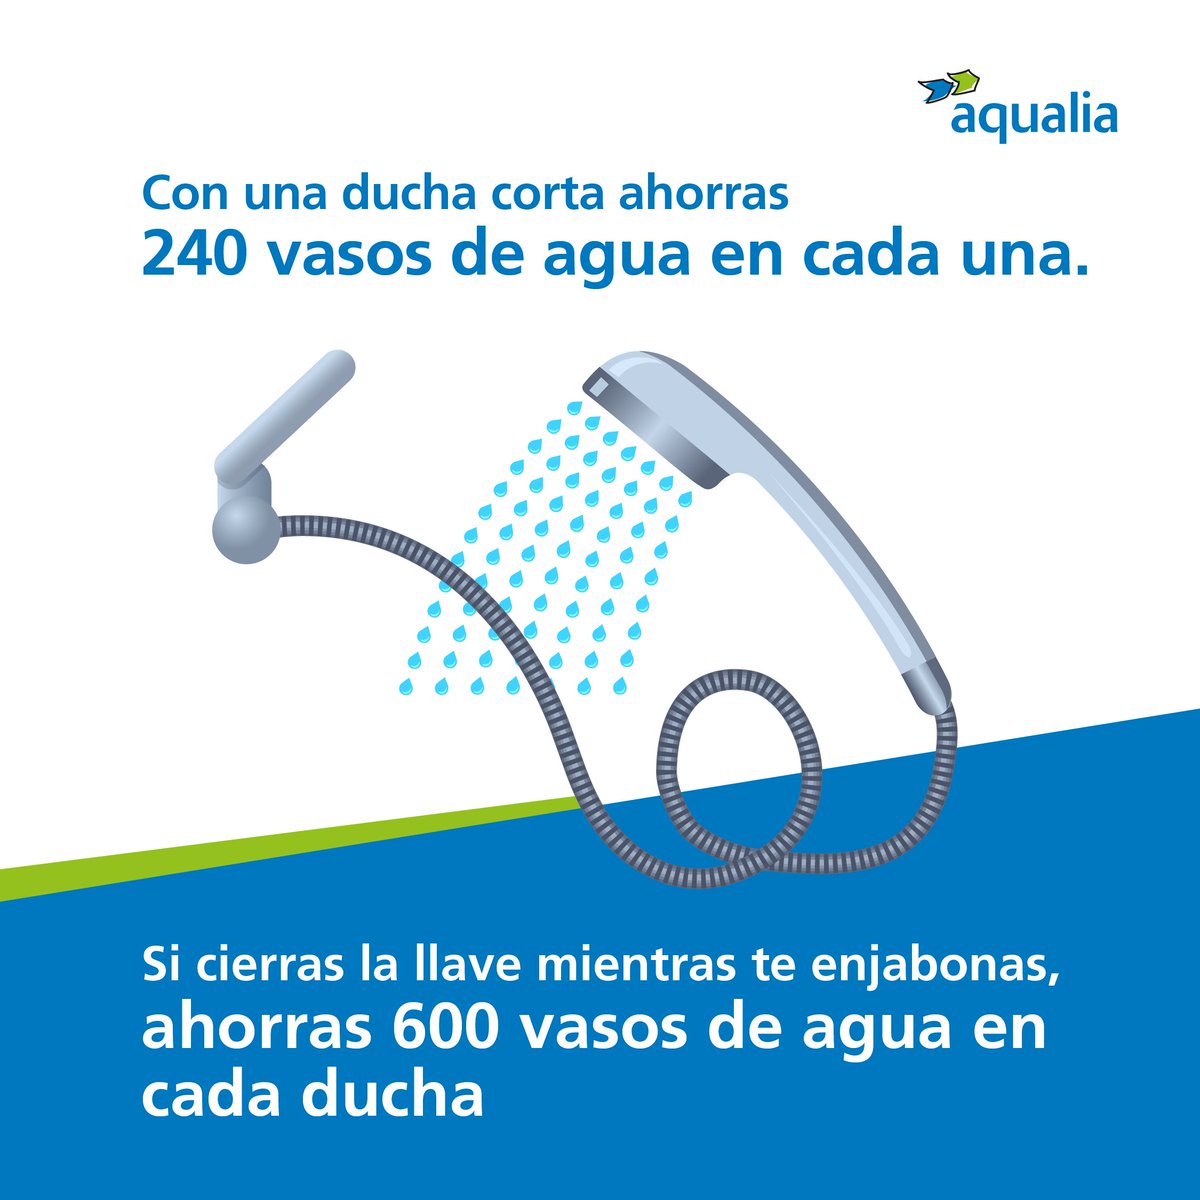 #AqualiaCol 🇨🇴

¡Todos podemos contribuir a conservar el agua en el día a día!
💧

👉🏻Empieza por adoptar prácticas responsables y únete a nuestra causa para proteger este recurso invaluable en el mundo.  💧😀
.
.
.
.
#SomosNativosSostenibles #CuidemosElAgua